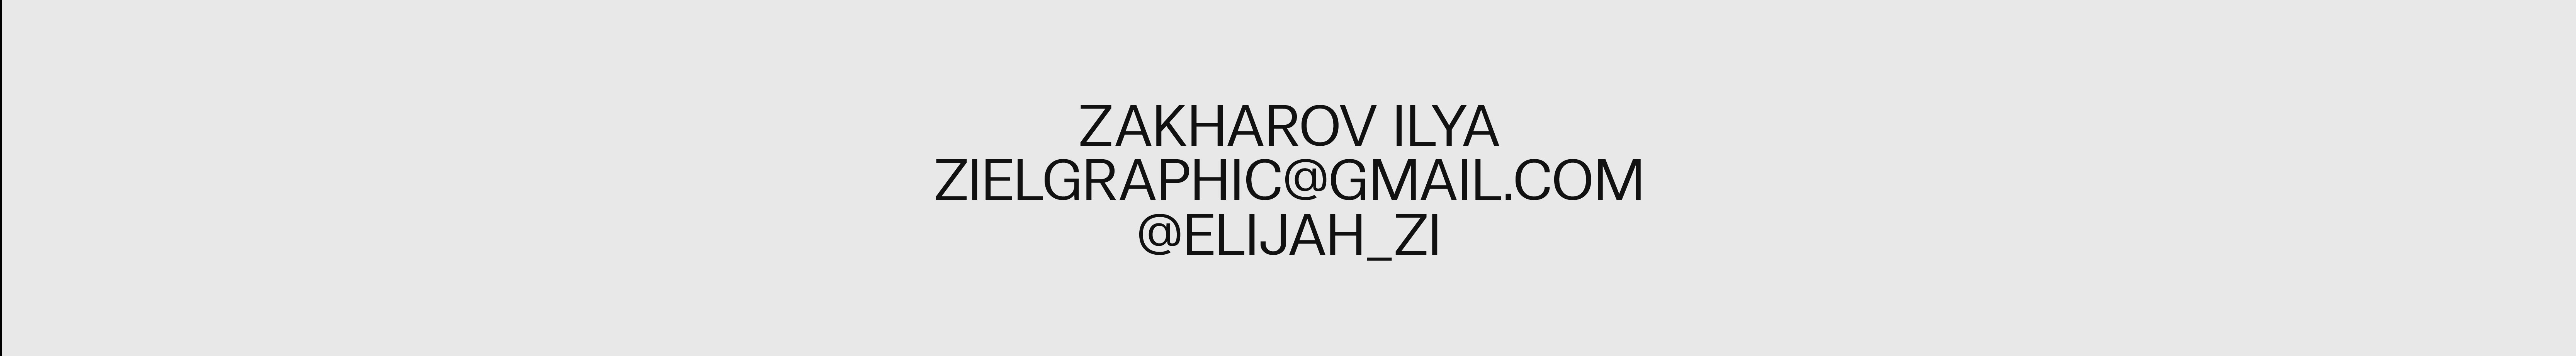 Ilya Zakharov's profile banner